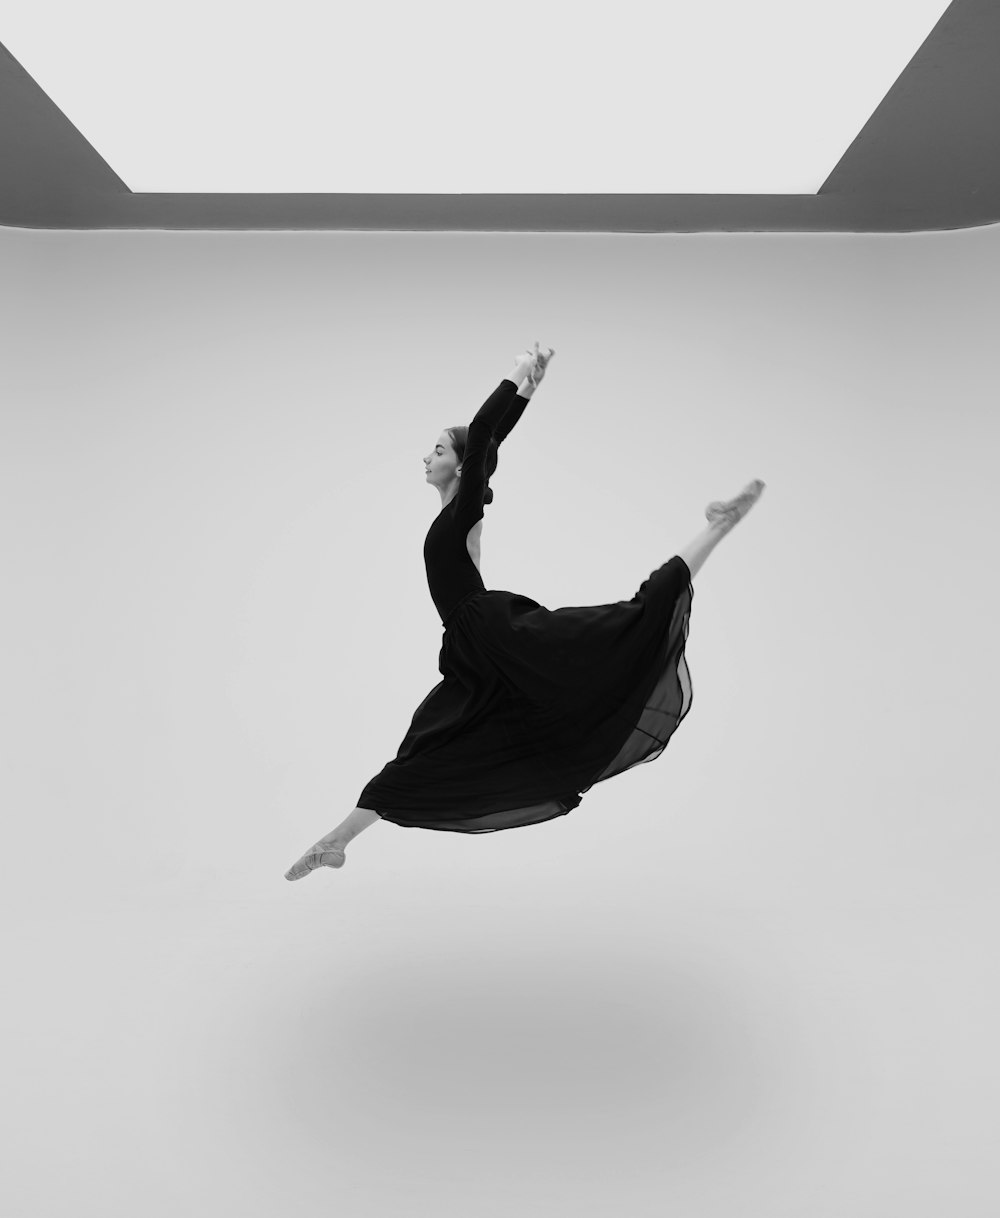 검은 드레스를 입은 여자가 공중을 날고 있다